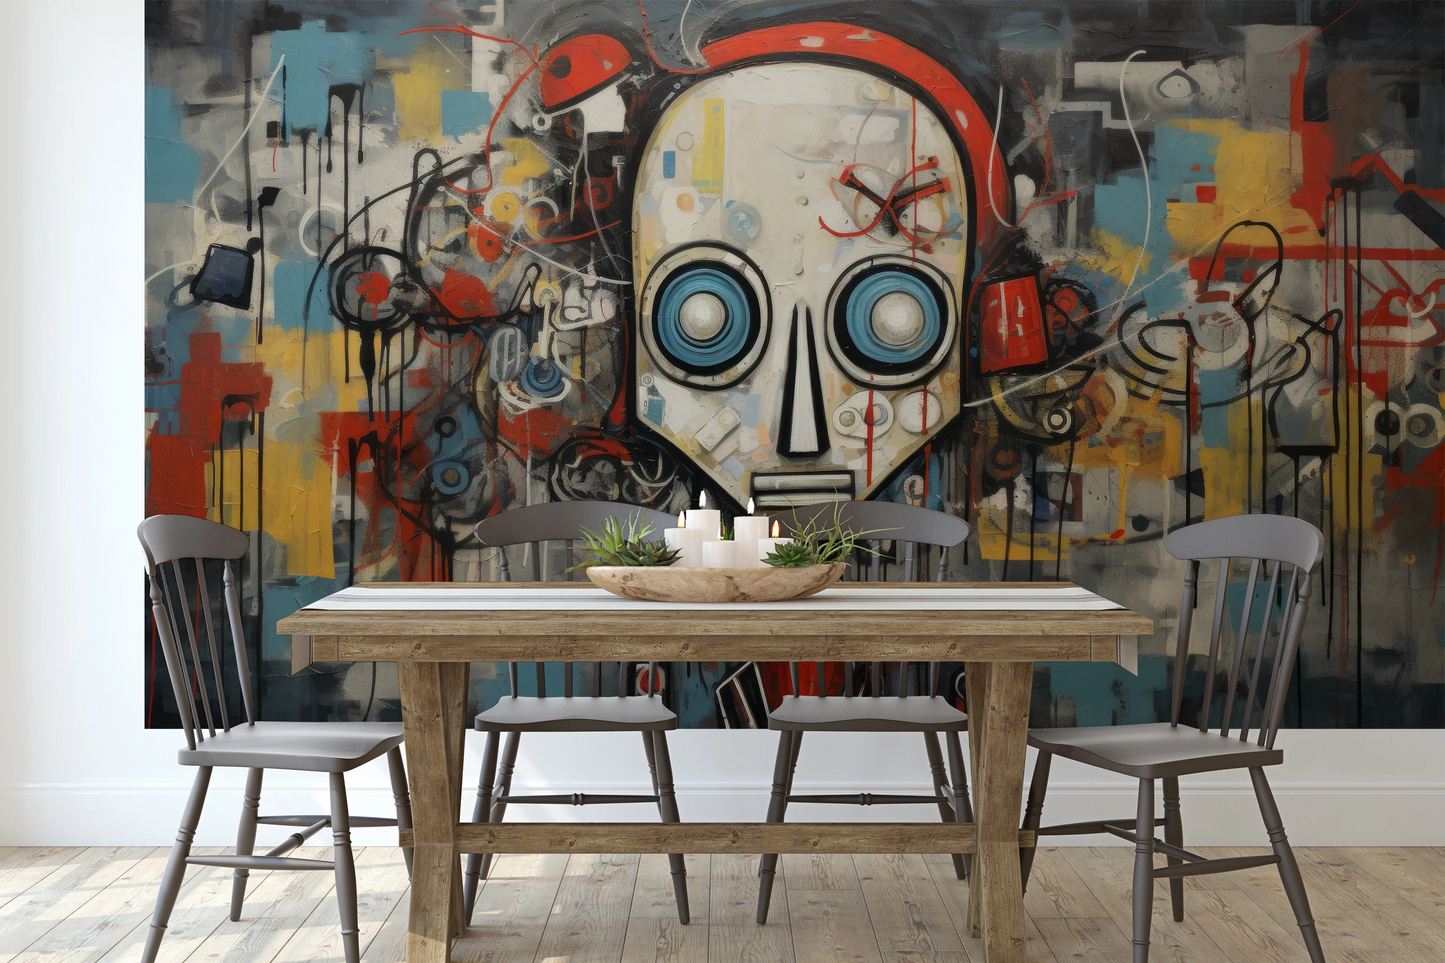 Fototapeta malowana o nazwie Industrial Robot pokazana w aranżacji wnętrza.